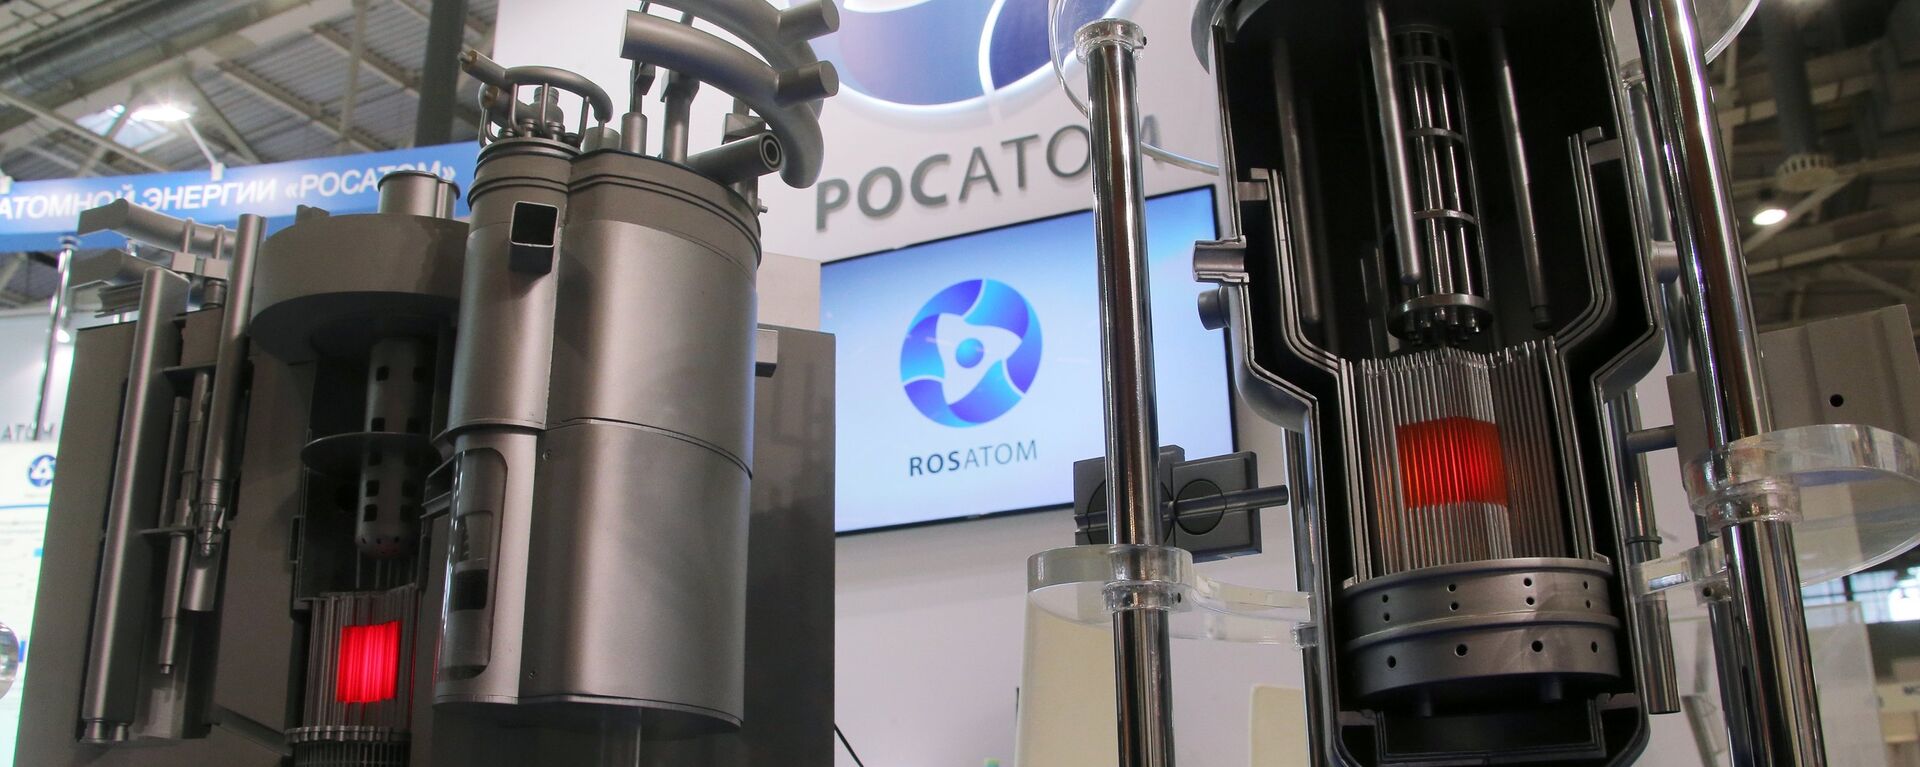 Los modelos de los reactores nucleares modernos de Rosatom en una exhibición en Moscú - Sputnik Mundo, 1920, 10.02.2022